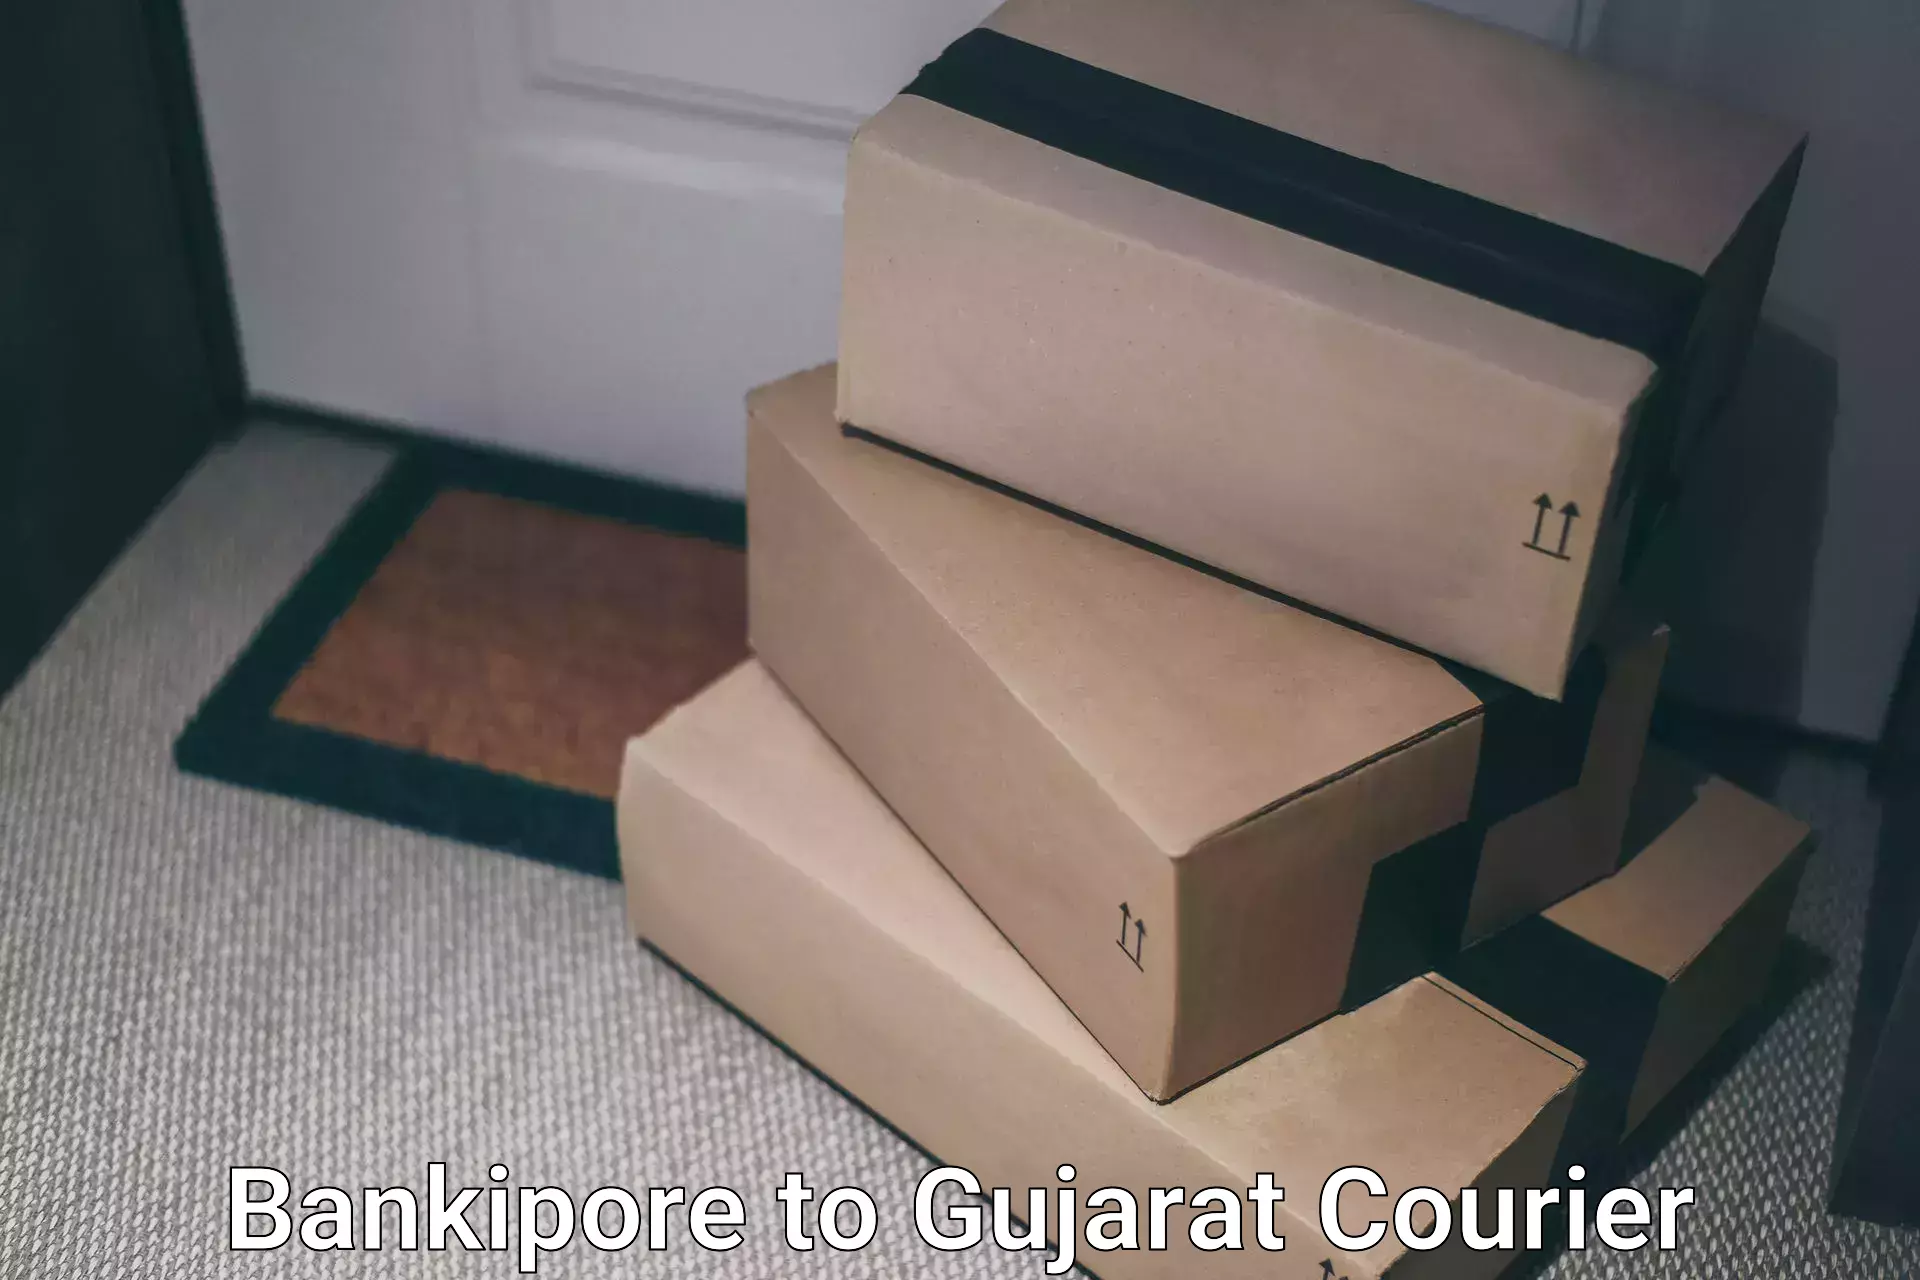 Efficient parcel service Bankipore to Surat